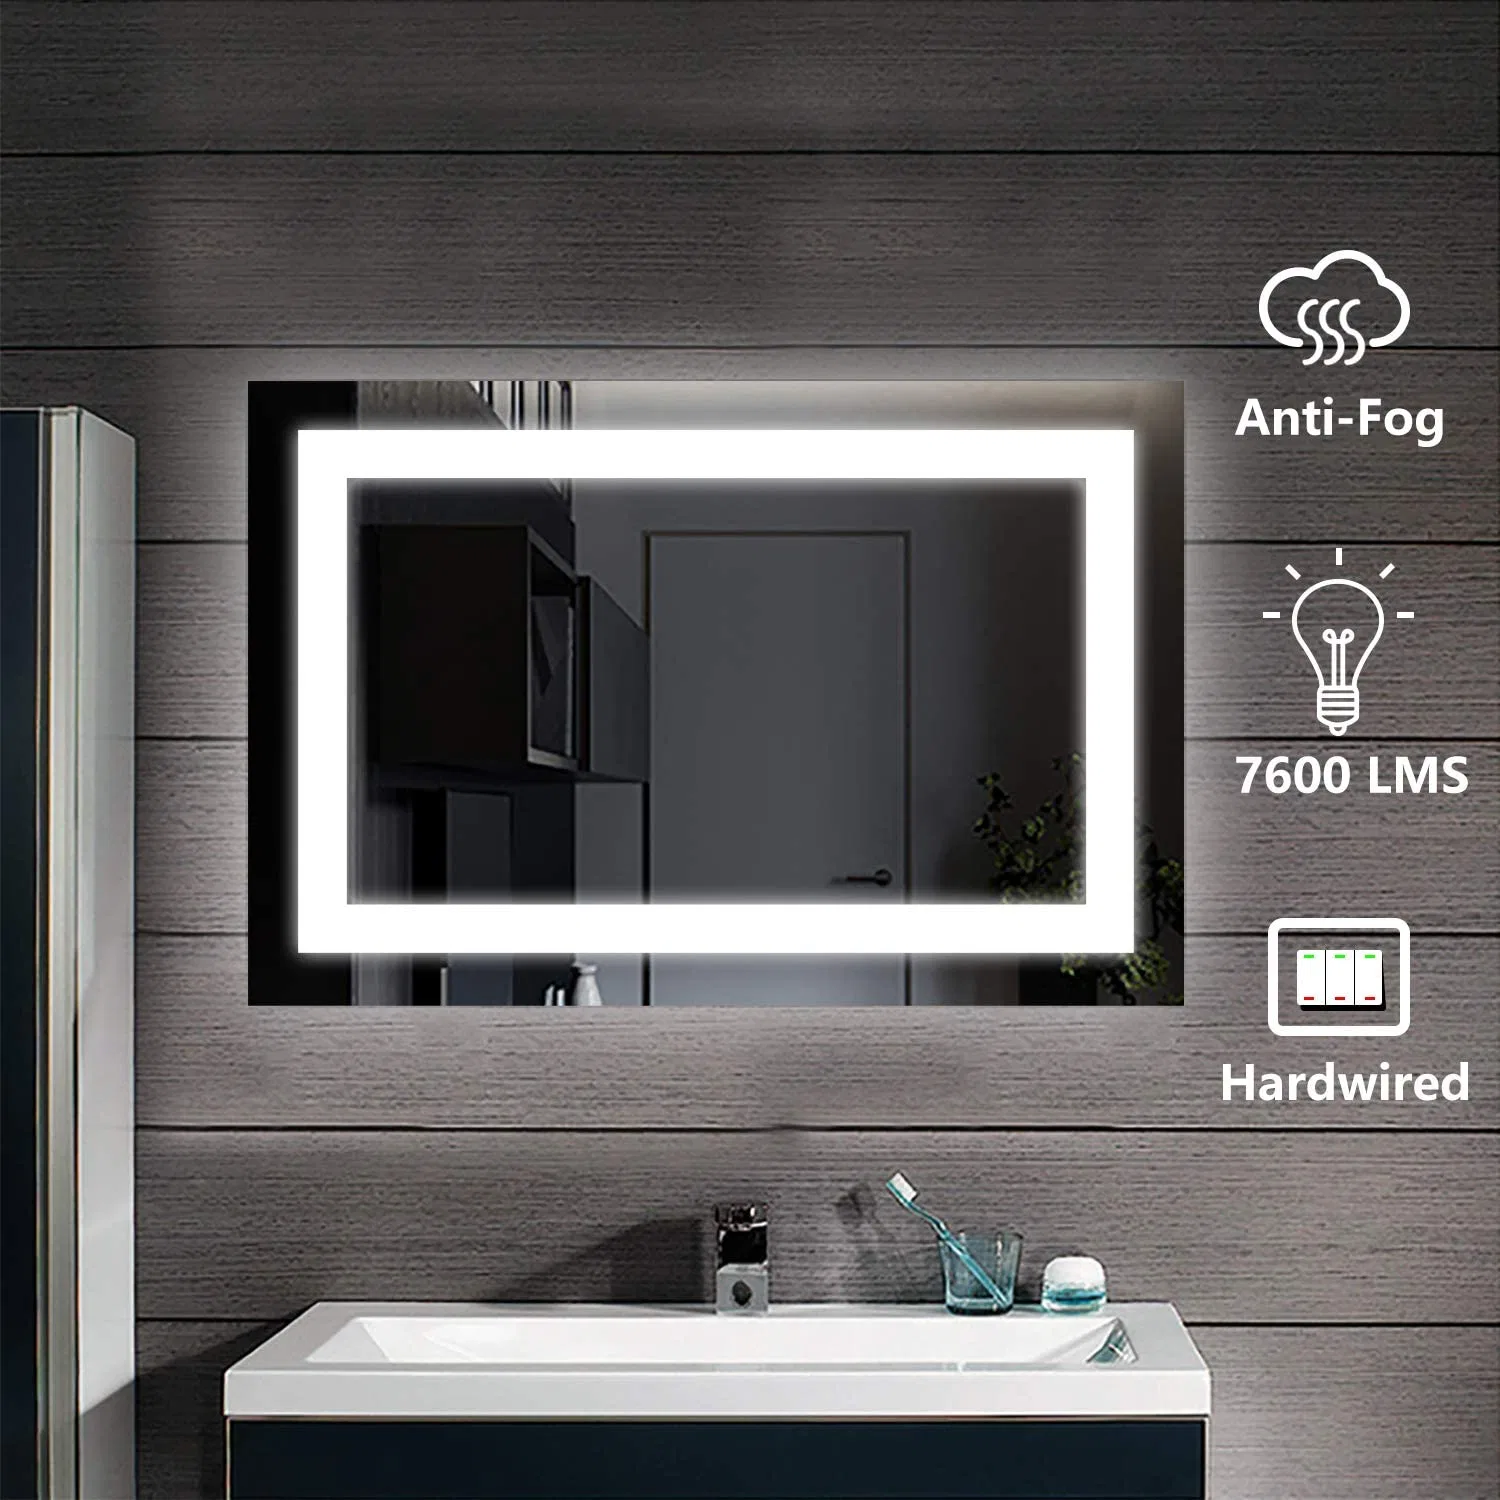 На заводе стены интерьер декор салон мебели в косметическом Smart туалетный столик в ванной комнате подсветкой светится индикатор с подсветкой зеркала с подсветкой антиобледенитель Bluetooth